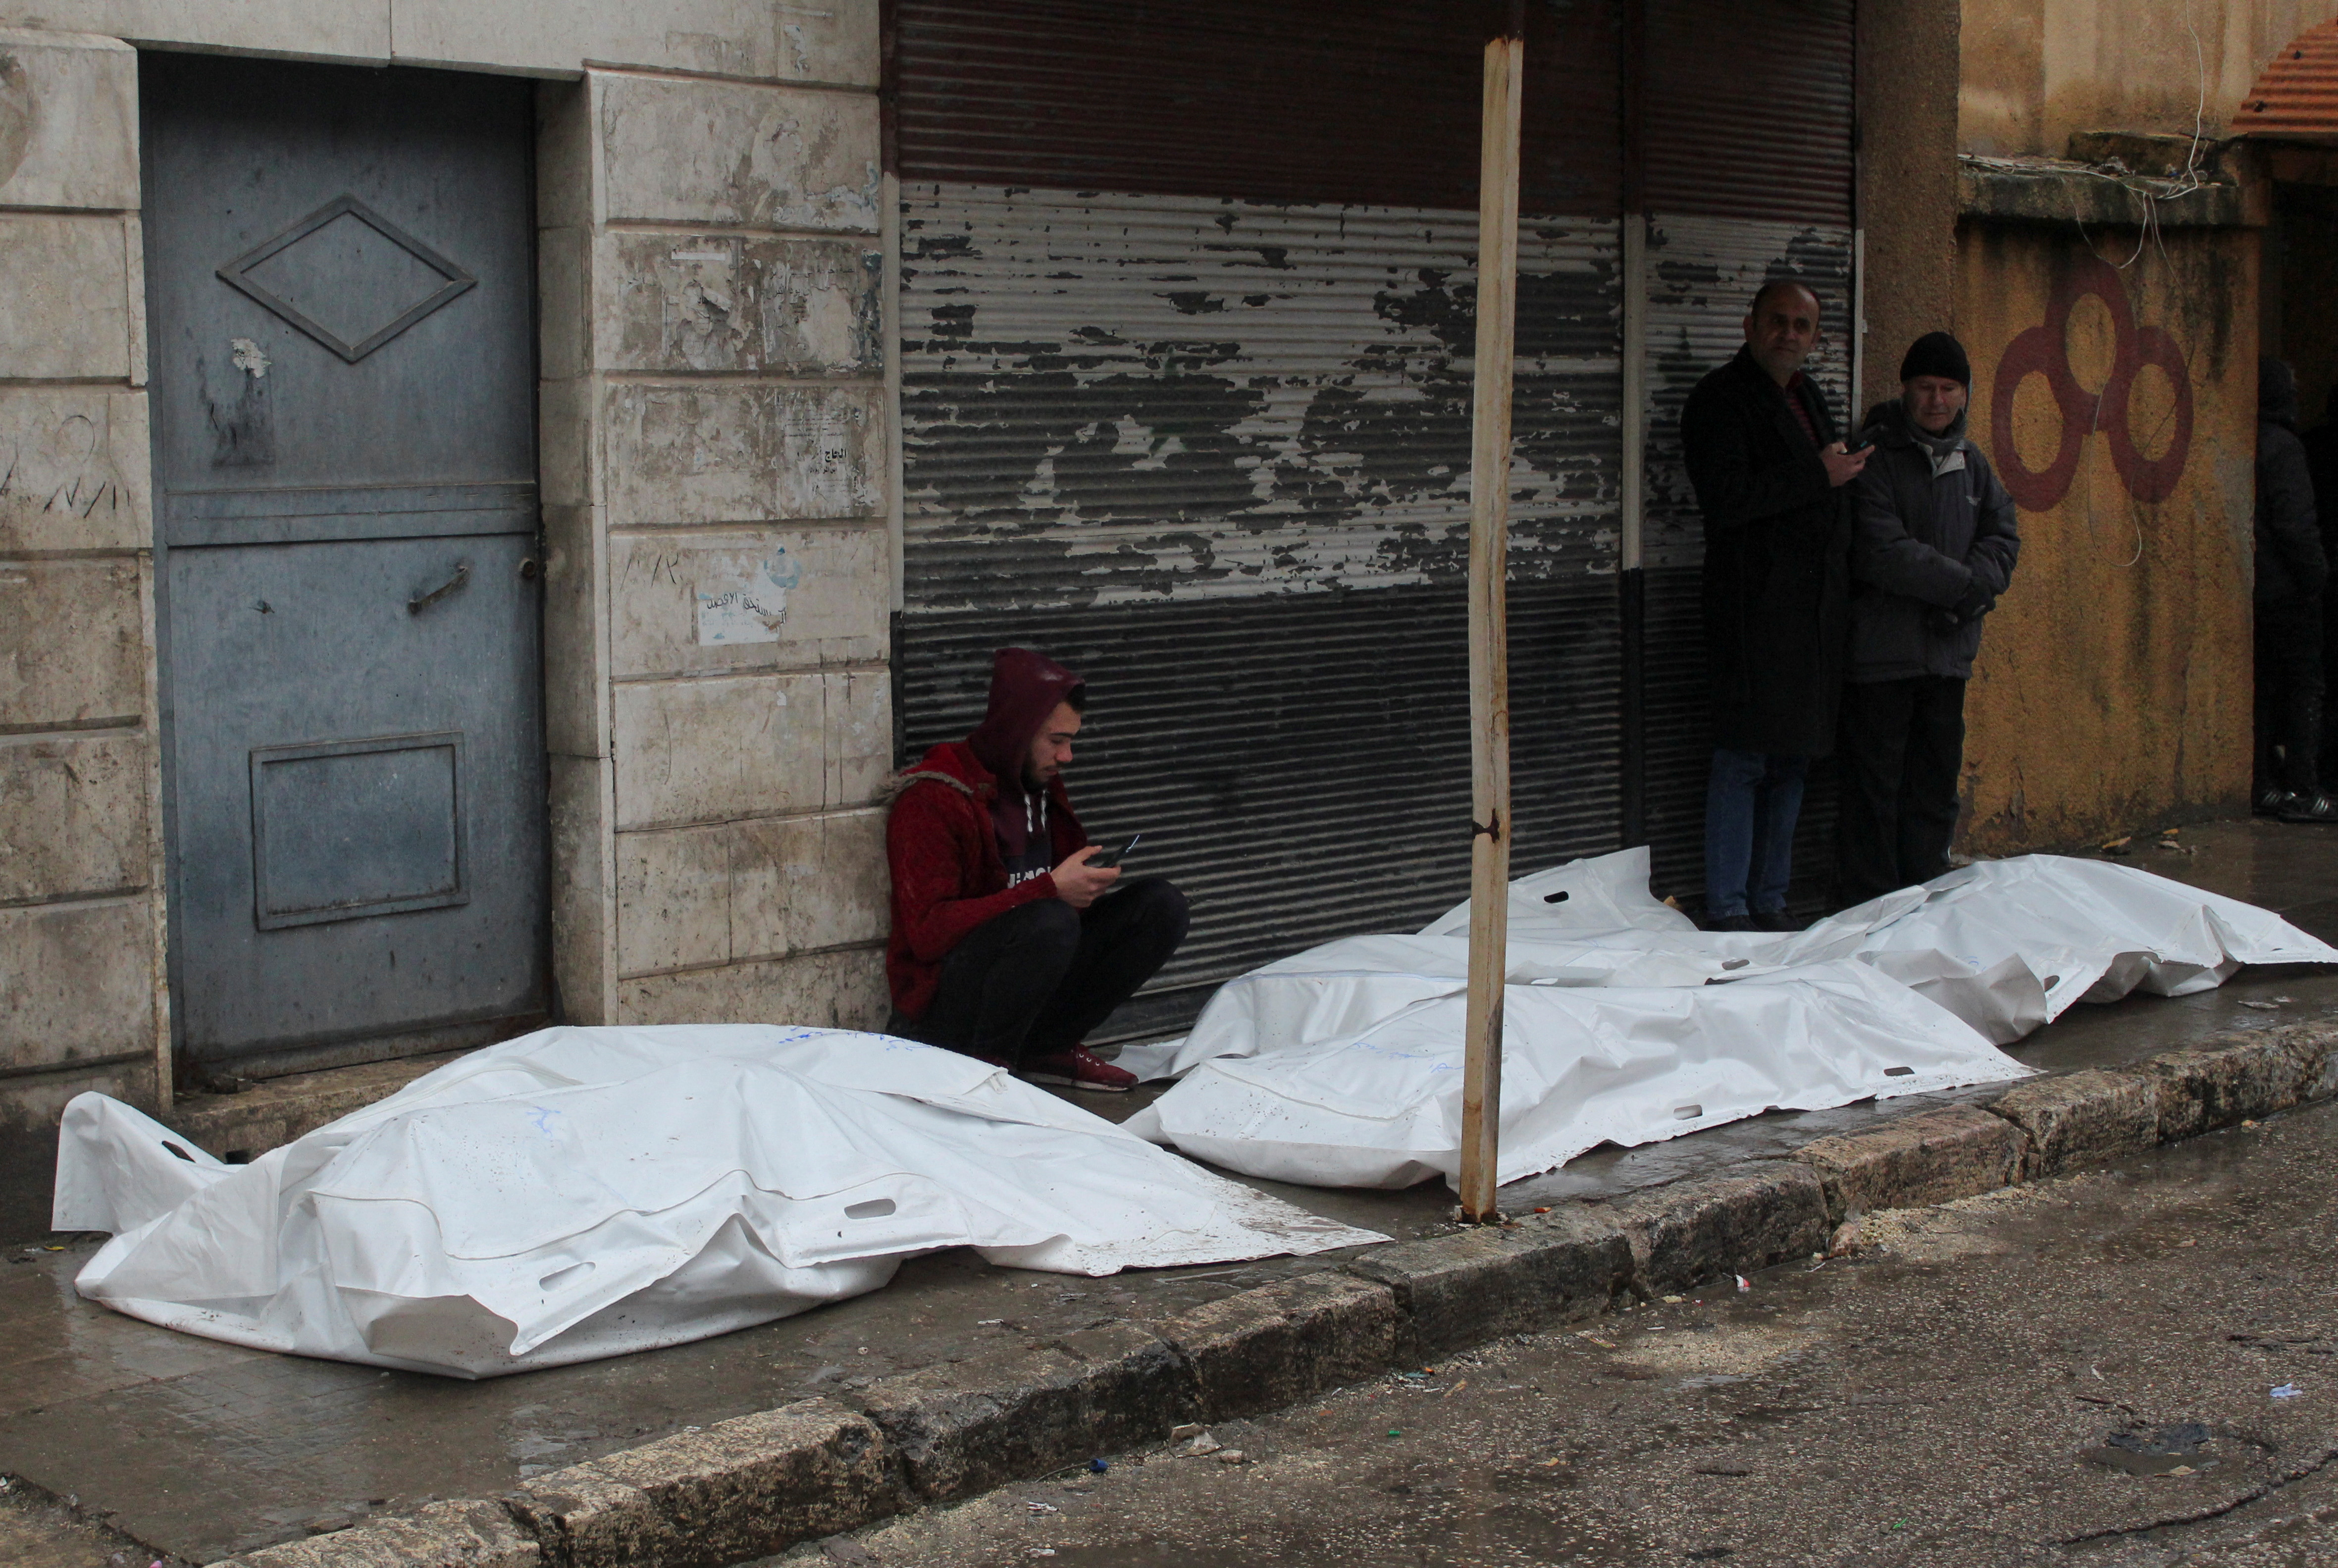 Un hombre se sienta junto a cadáveres en bolsas que yacen en el suelo, después de un terremoto, en Alepo, Siria, 6 de febrero de 2023. REUTERS/Firas Makdesi